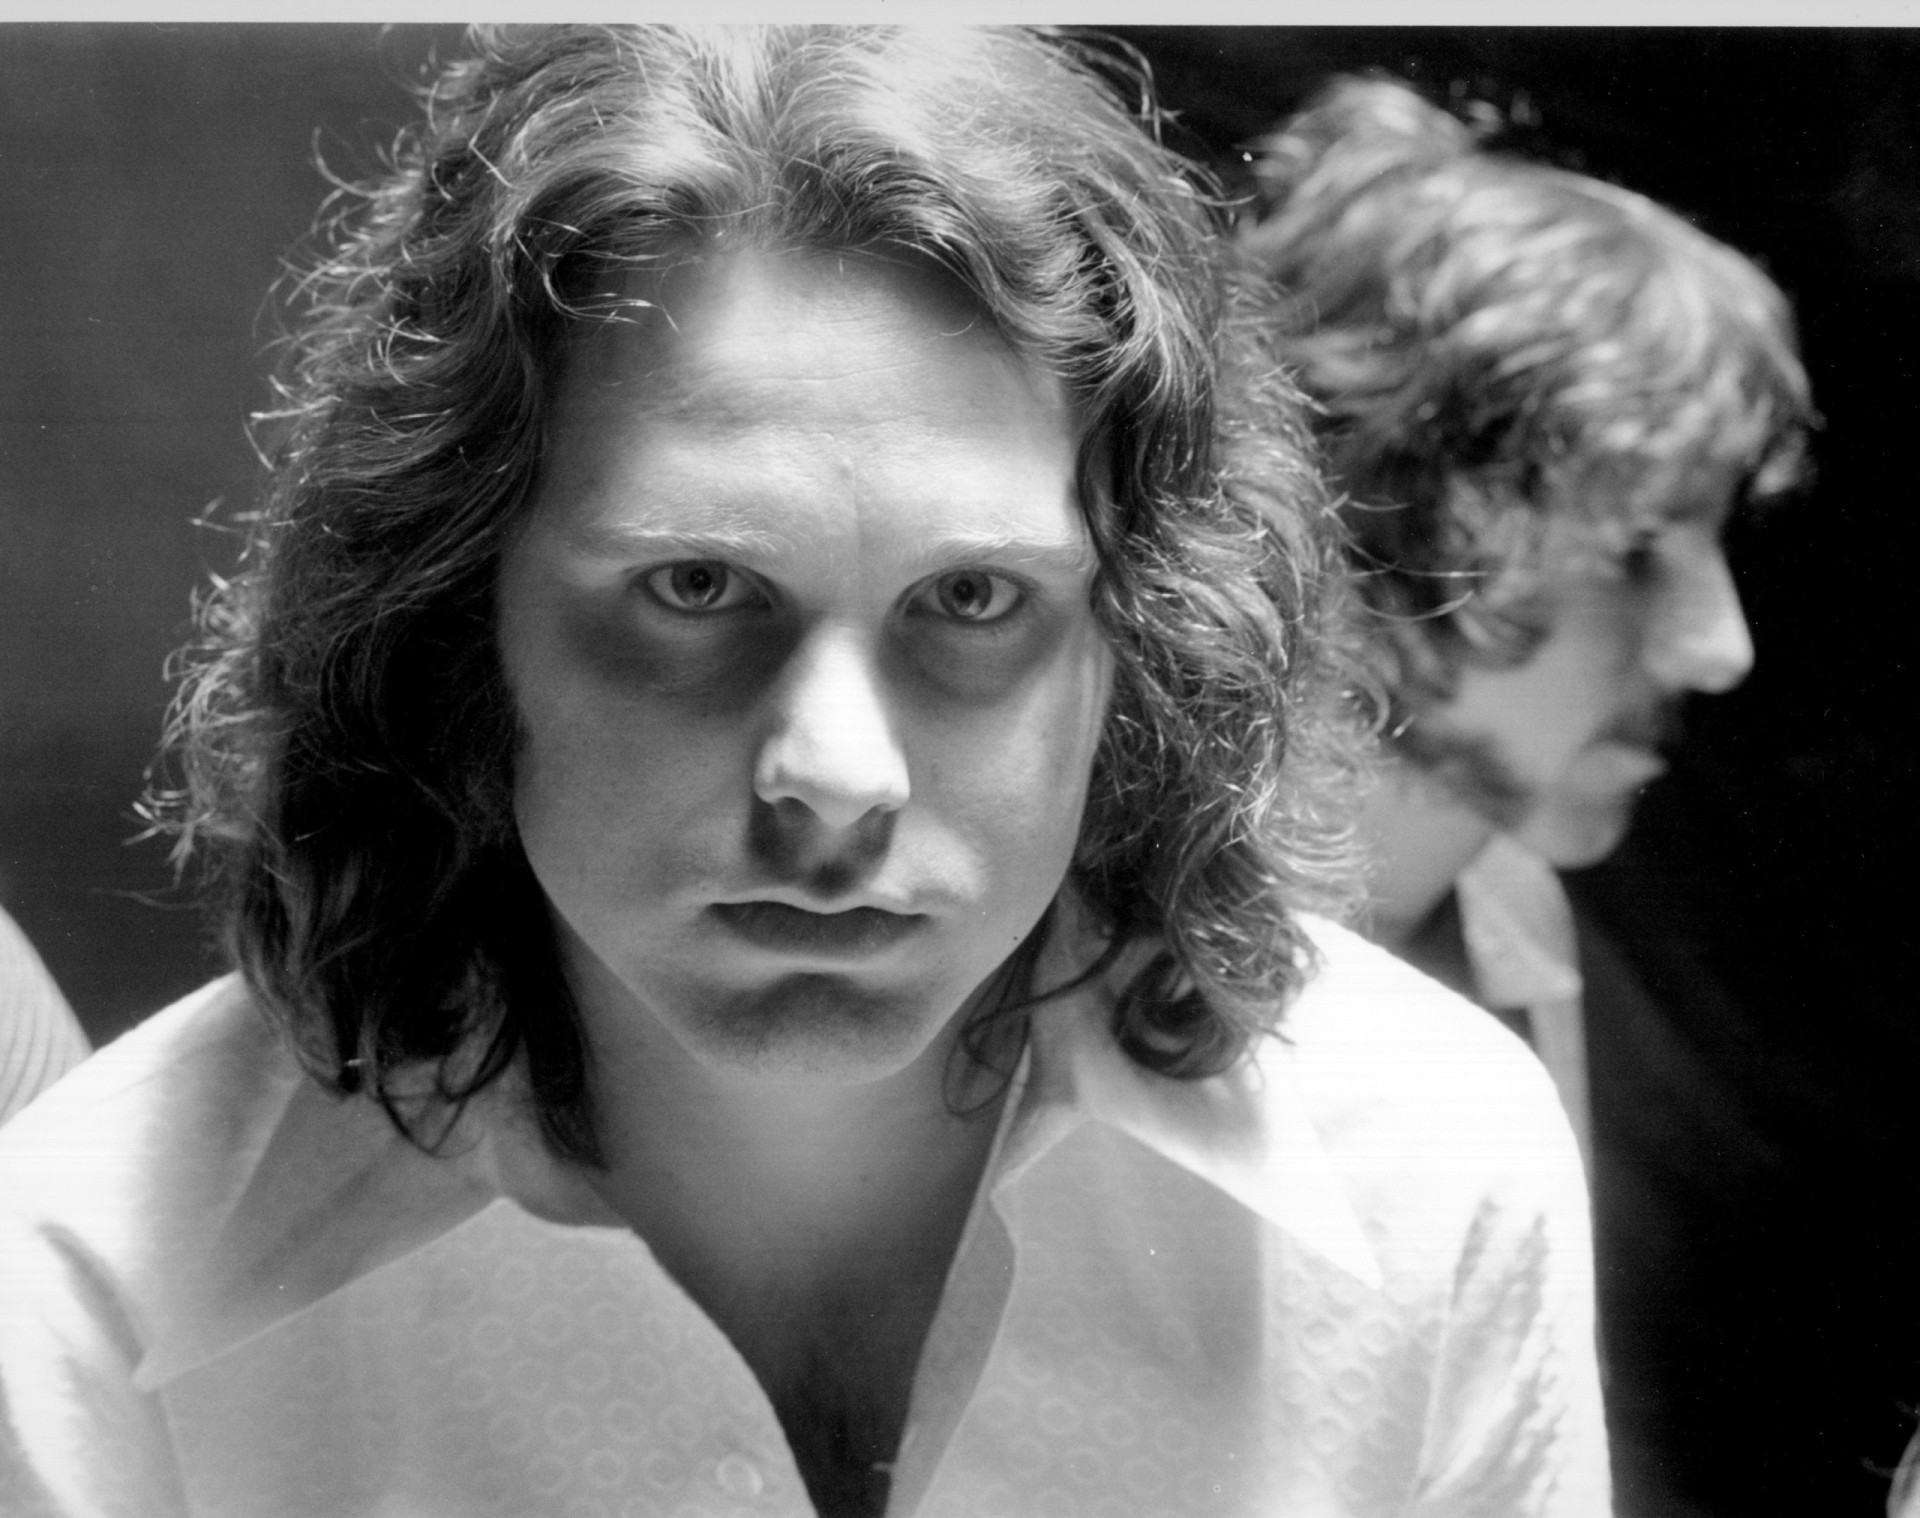 <p>El cantante de The Doors, Jim Morrison, murió en 1971 con 27 años. Fue enterrado en el cementerio de Père Lachaise (París, Francia). Los fans no tardaron en ir hasta allí para cubrir su tumba y muchas otras de grafitis, lo que hizo que las autoridades locales levantasen una valla alrededor para protegerla. Sin embargo, esto le dio a sus seguidores otra peculiar idea.</p>